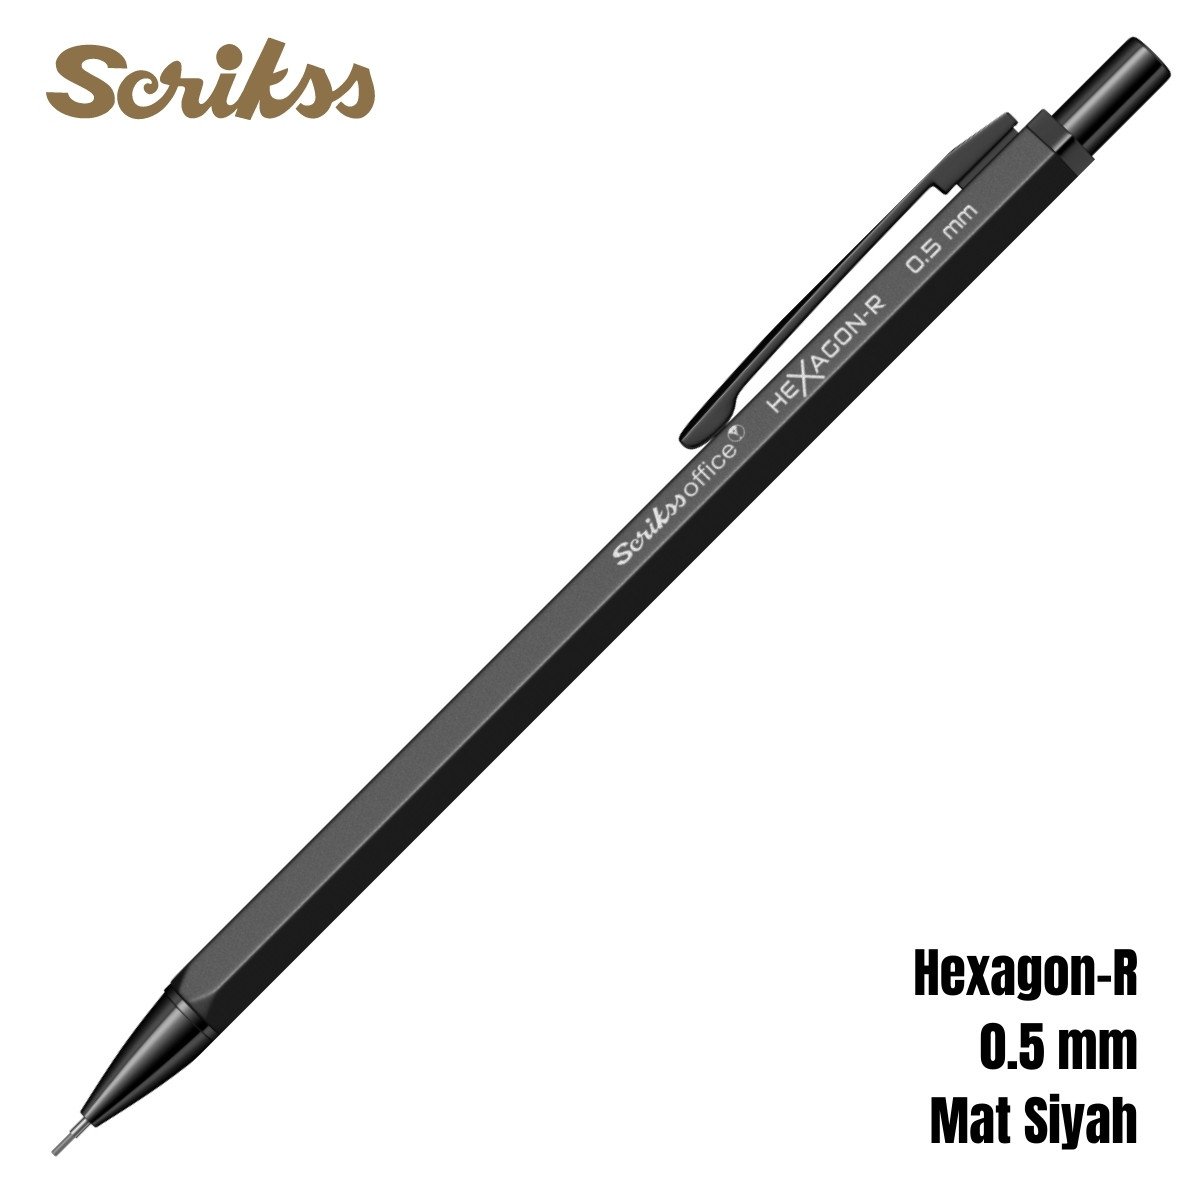 Scrikss Versatil Kalem Hexagon-R 0.5mm Mat Siyah